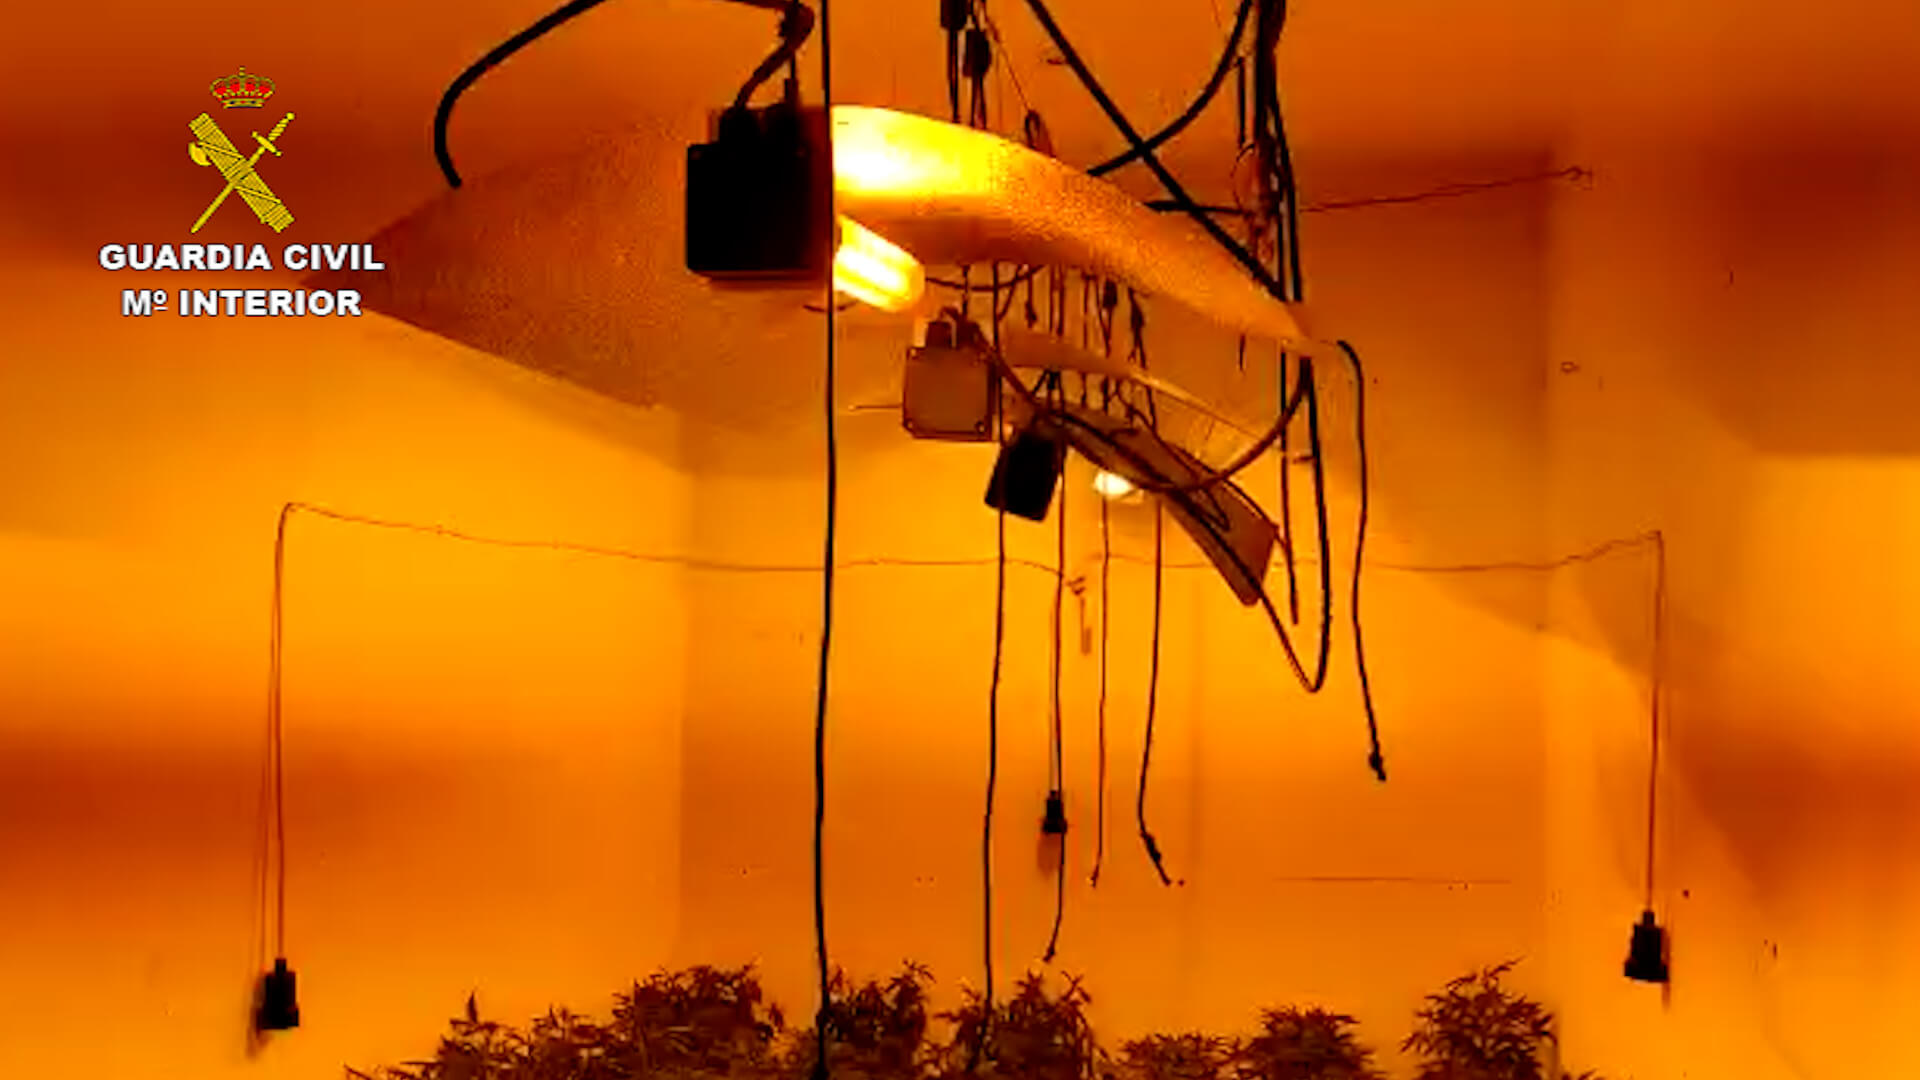 La Guardia Civil de Utrera incauta 444 plantas de marihuana en una vivienda ocupada ilegalmente